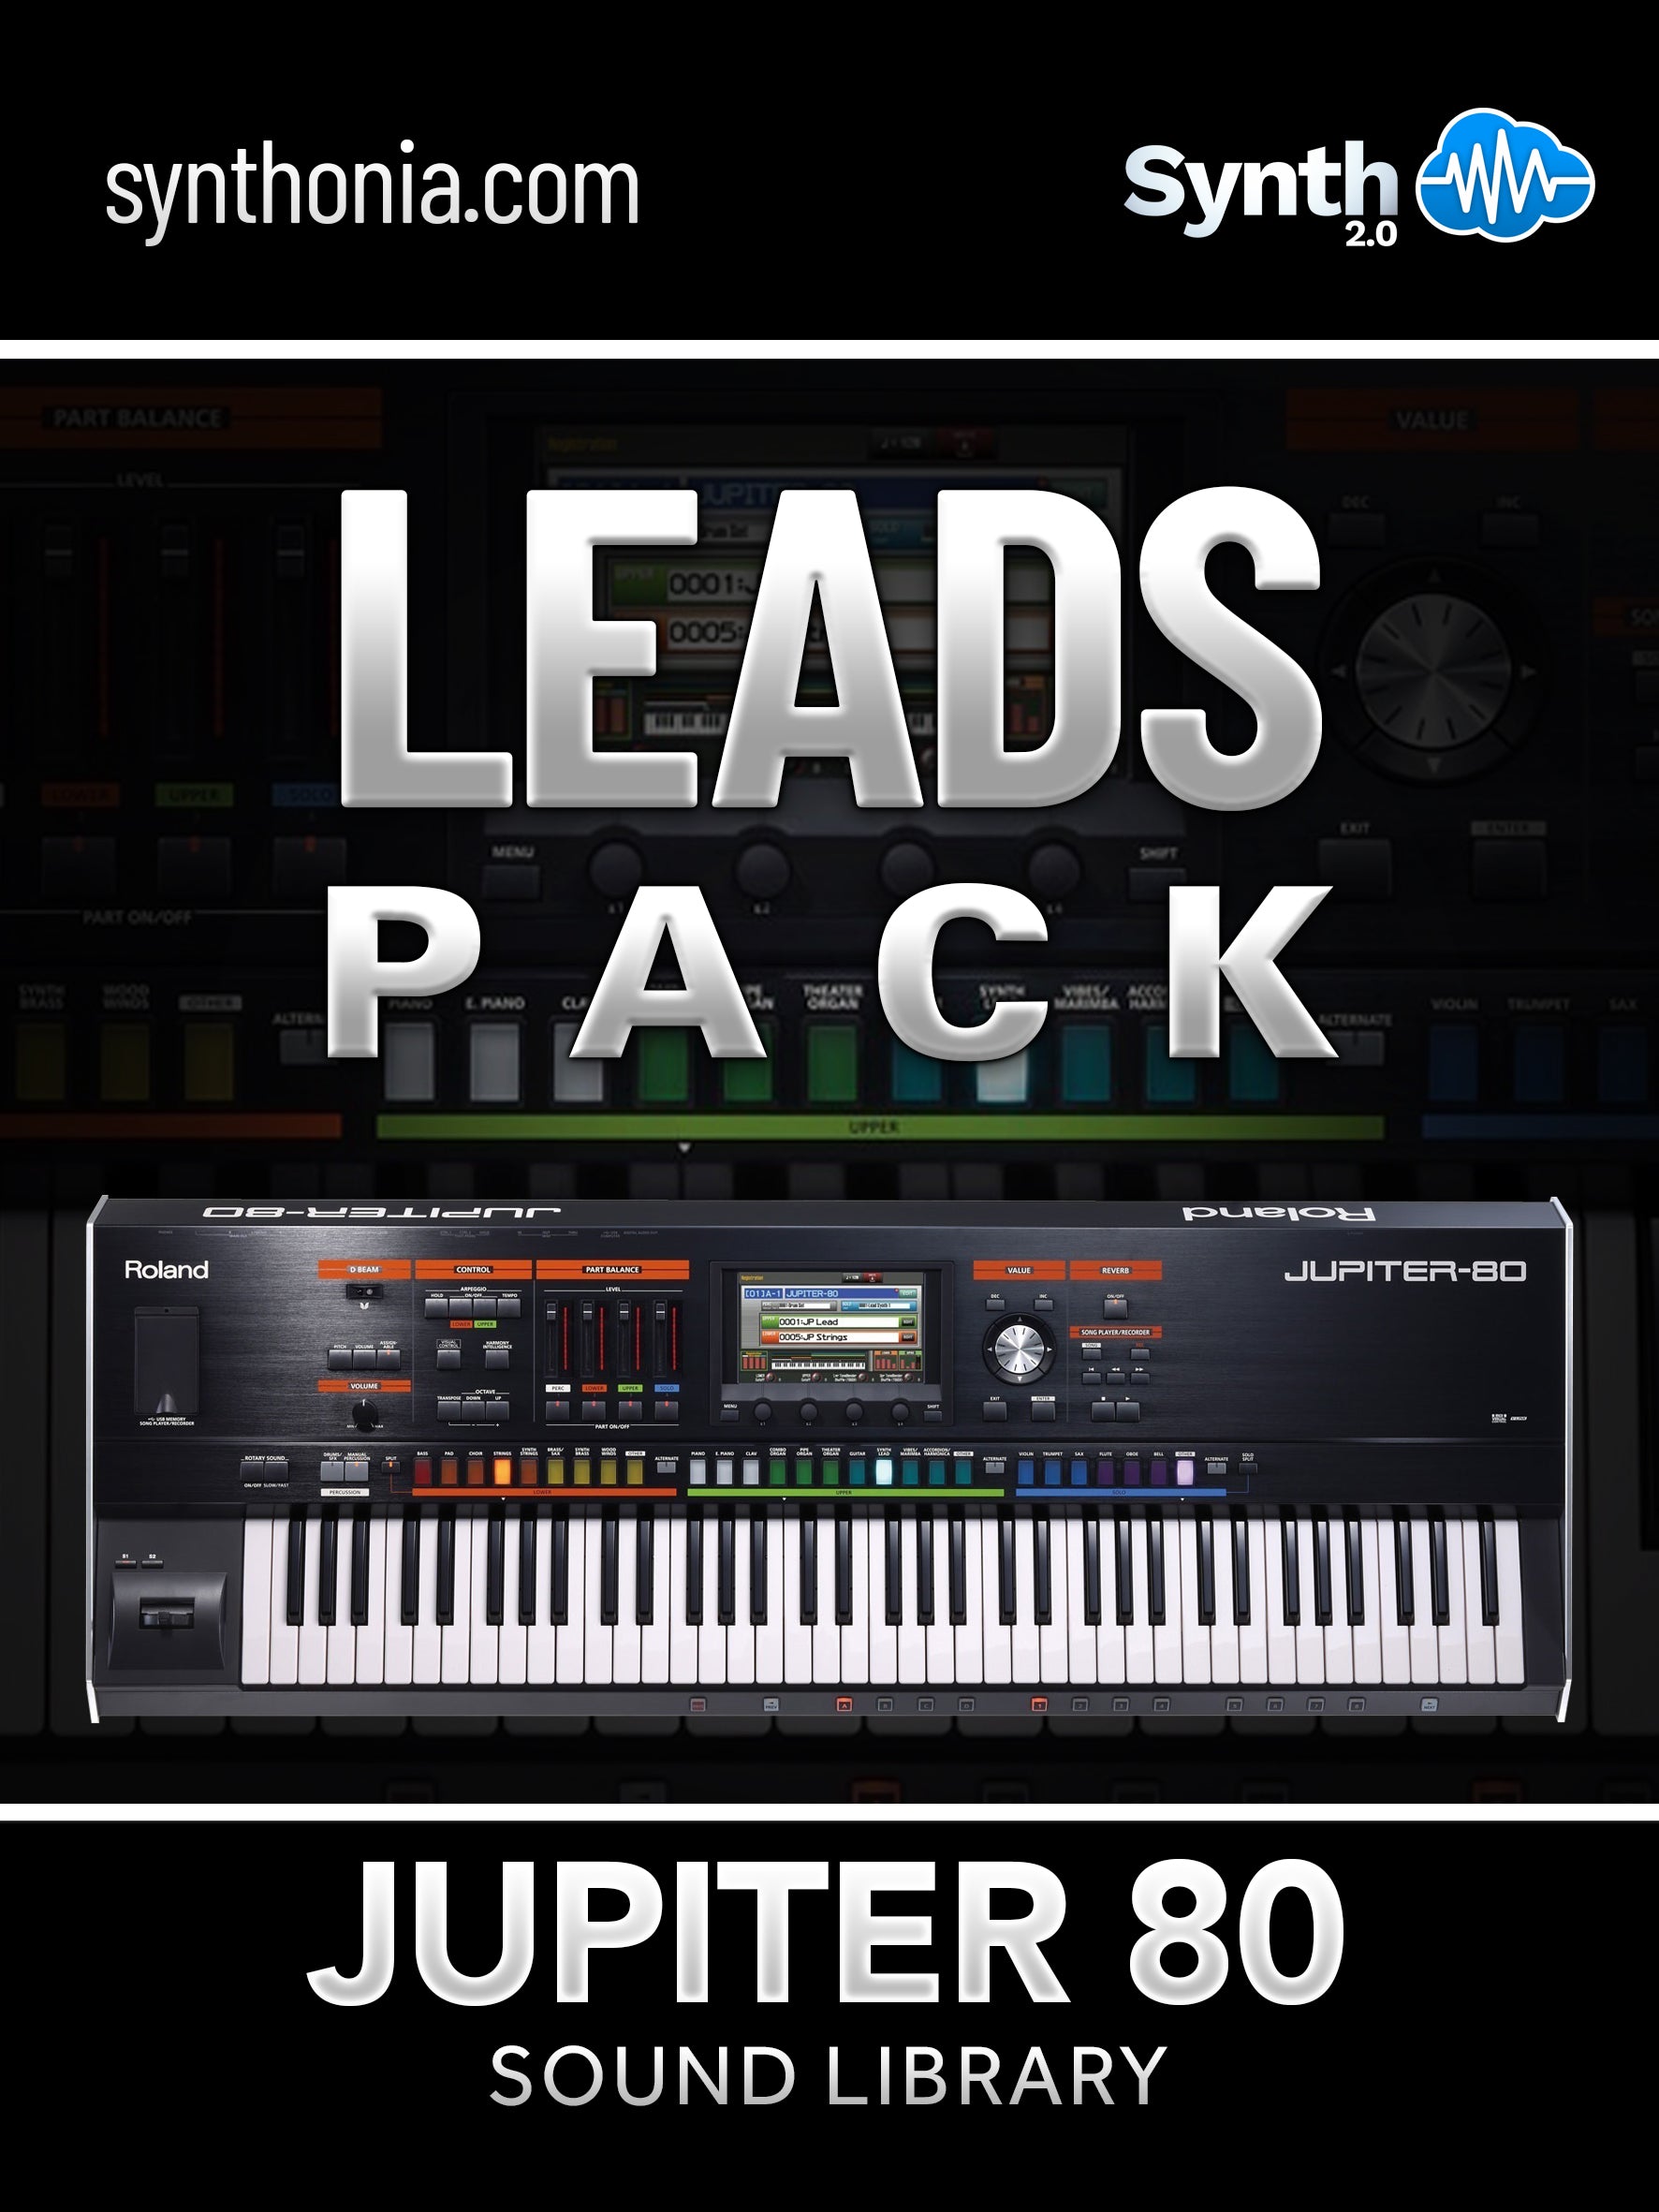 LDX105 - Leads Pack - Jupiter 80 ( 13 presets )